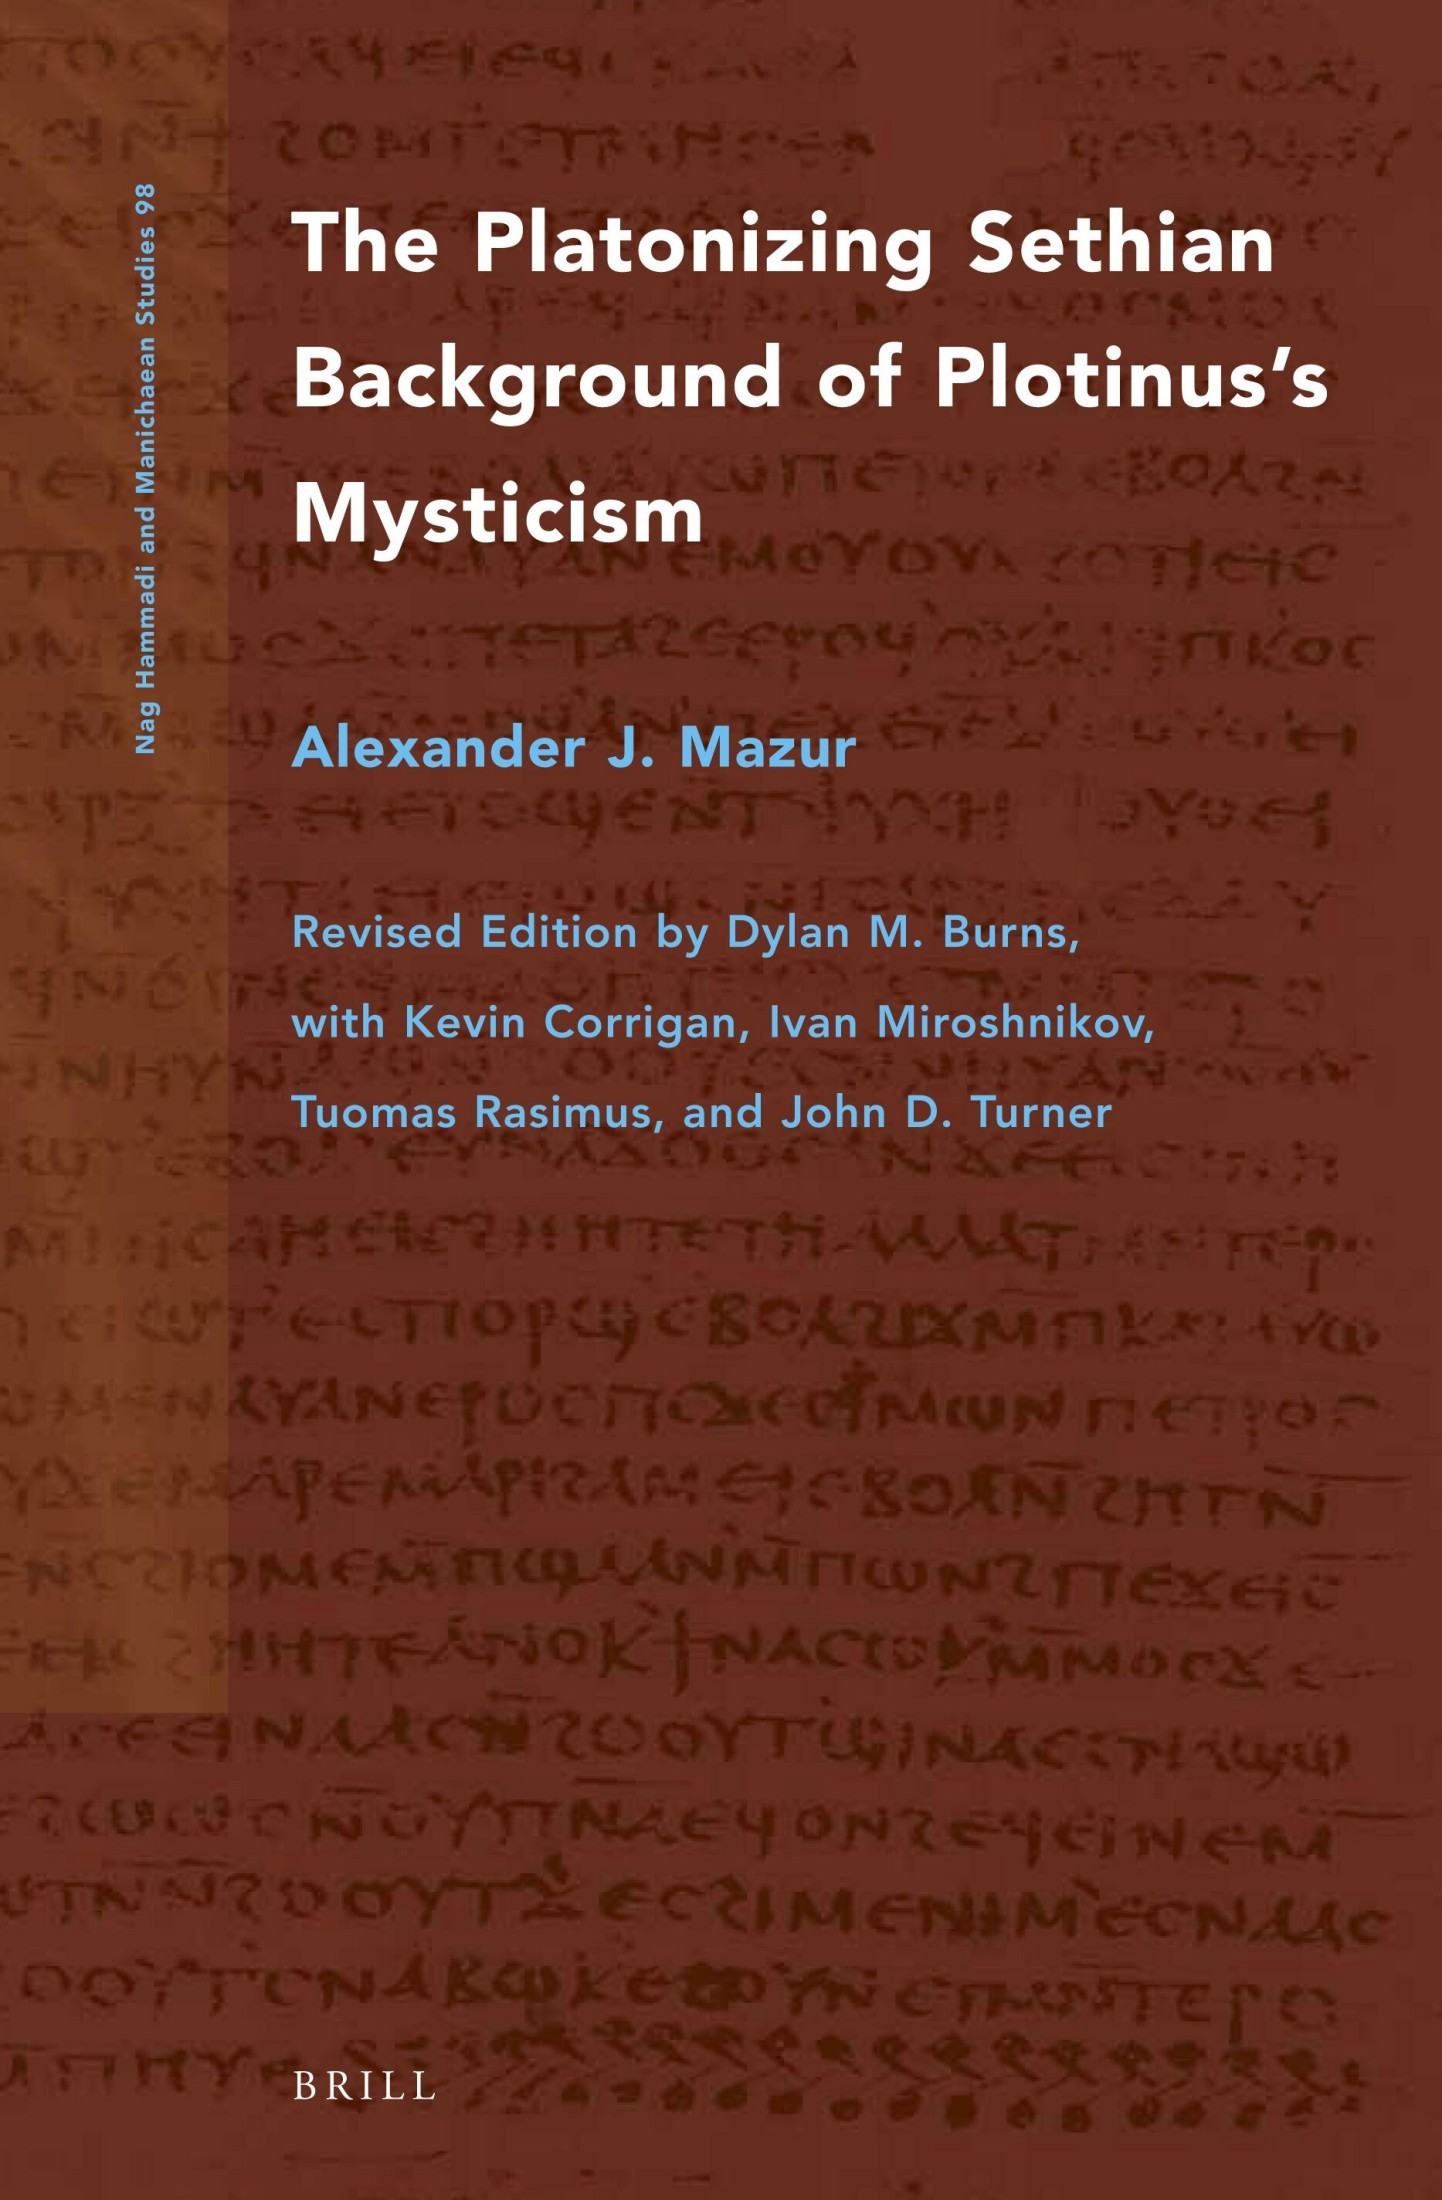 The Platonizing Sethian Background of Plotinus's Mysticism